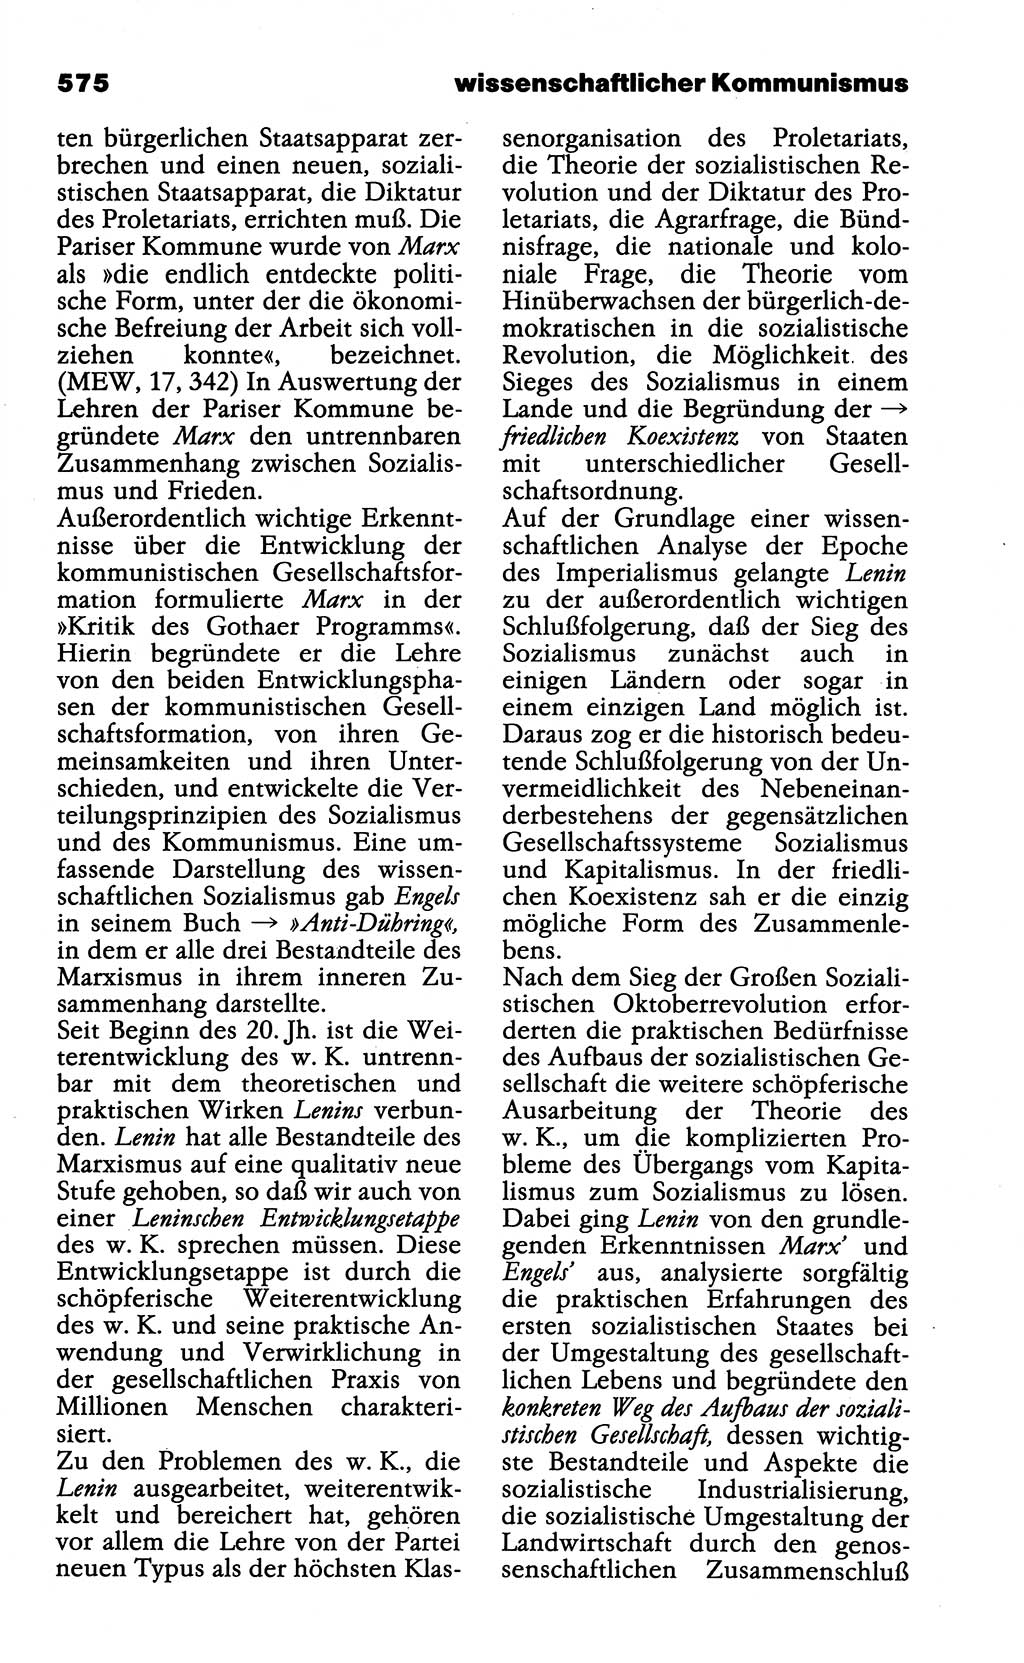 Wörterbuch der marxistisch-leninistischen Philosophie [Deutsche Demokratische Republik (DDR)] 1985, Seite 575 (Wb. ML Phil. DDR 1985, S. 575)